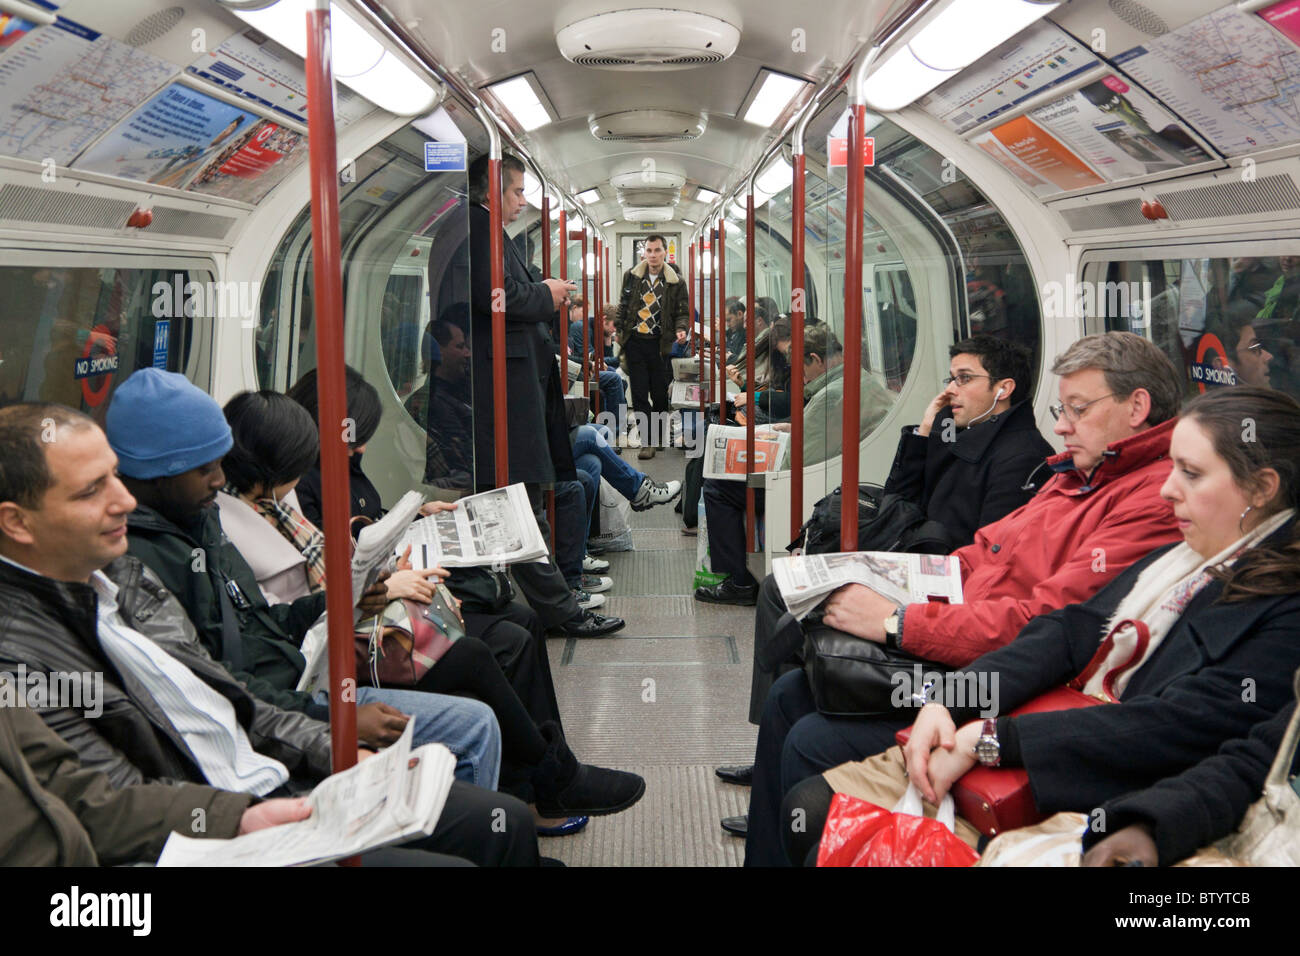 Bakerloo Line London Underground Train during evening rush hour. Stock Photo